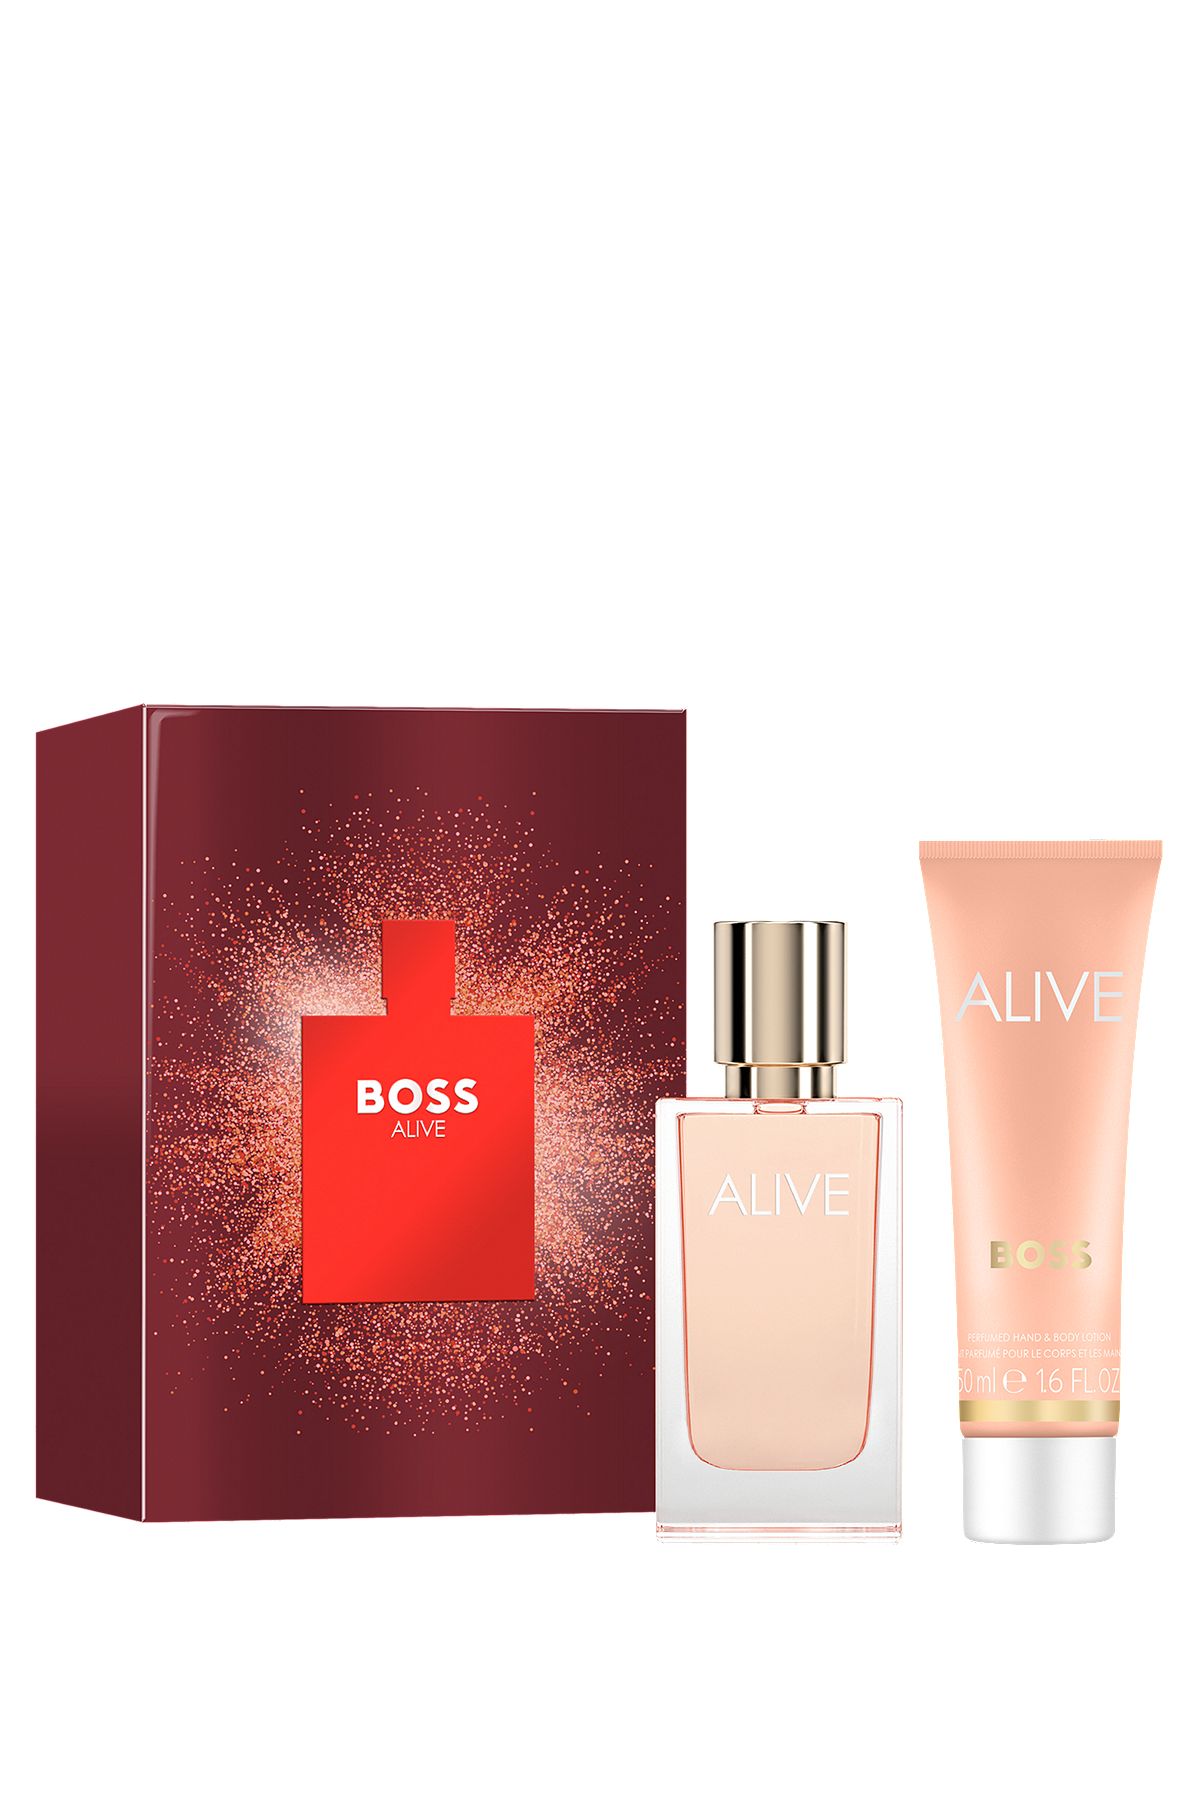 BOSS Alive eau de parfum gift set, Assorted-Pre-Pack